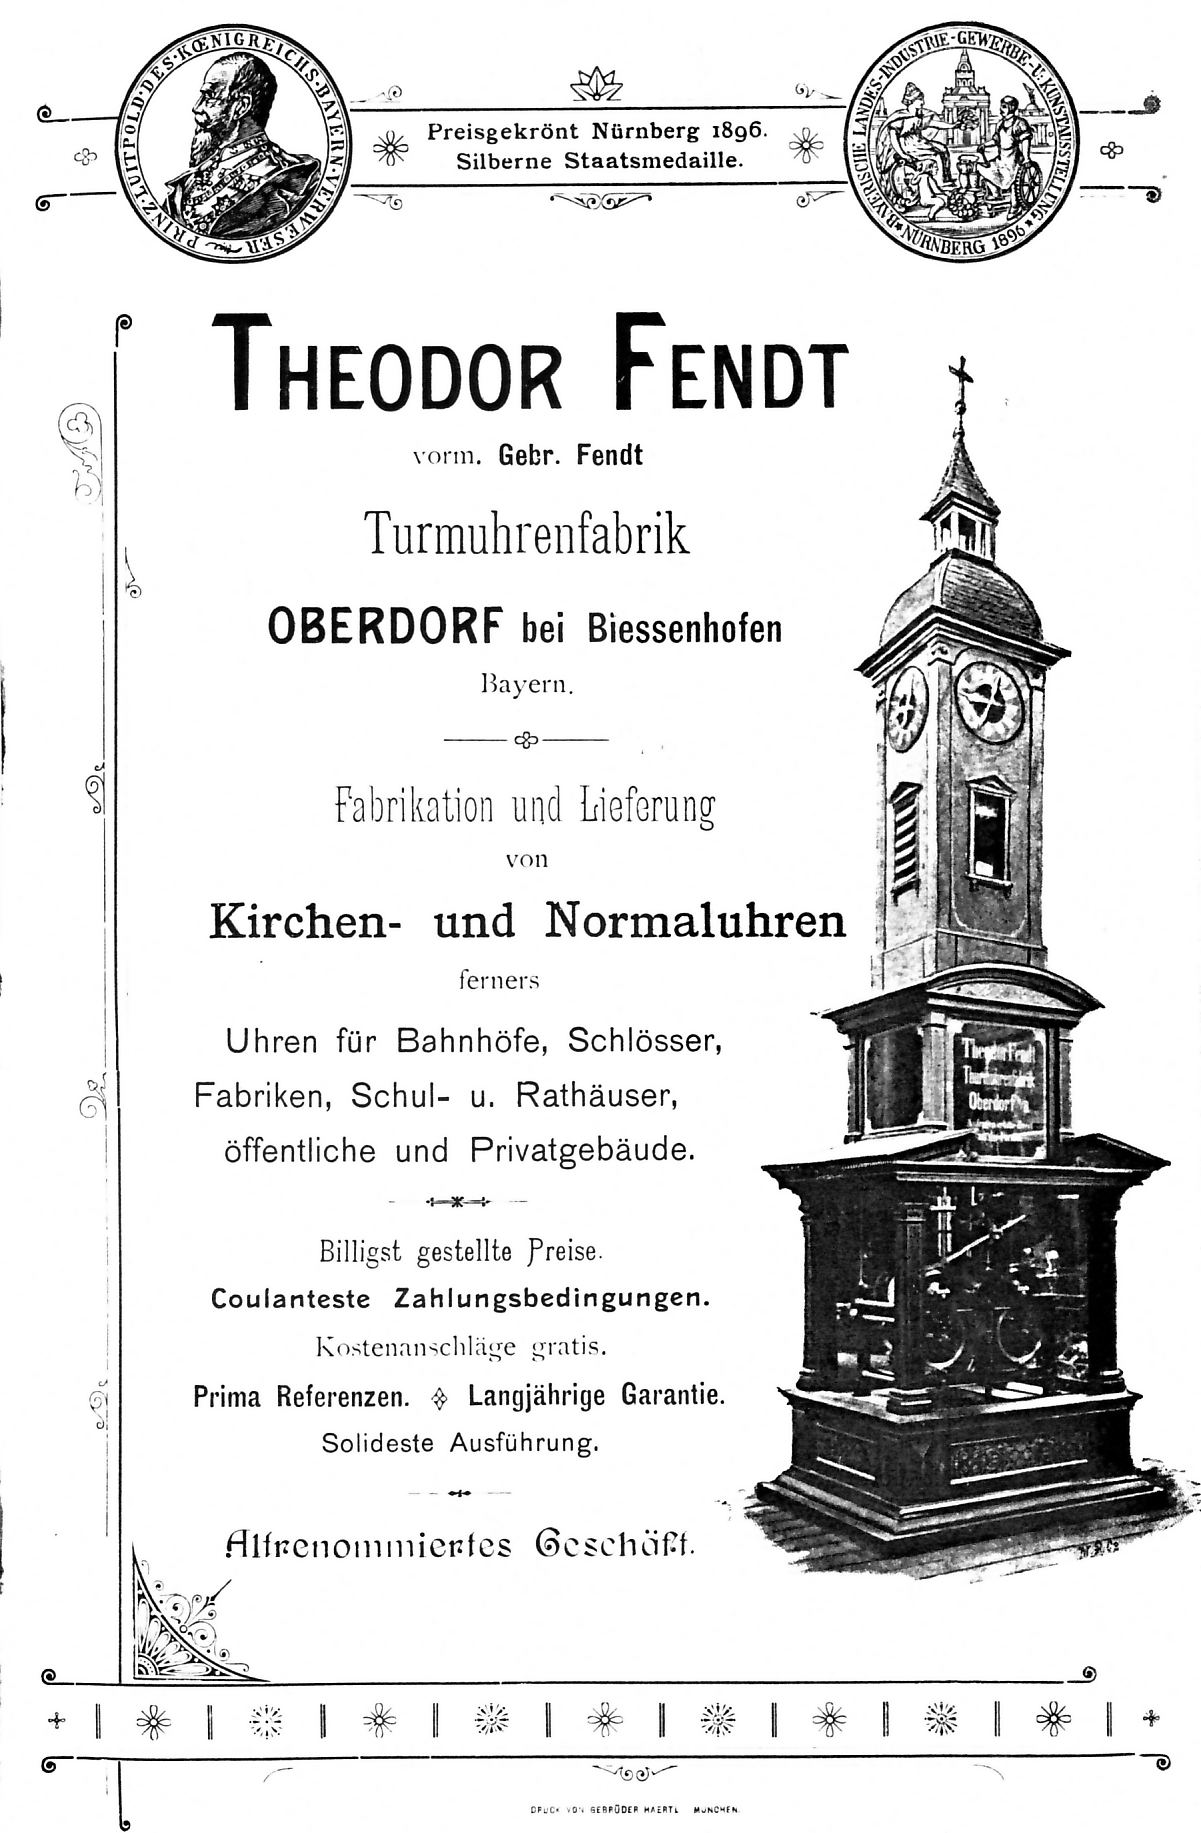 Theodor Fendt Werbebroschüre